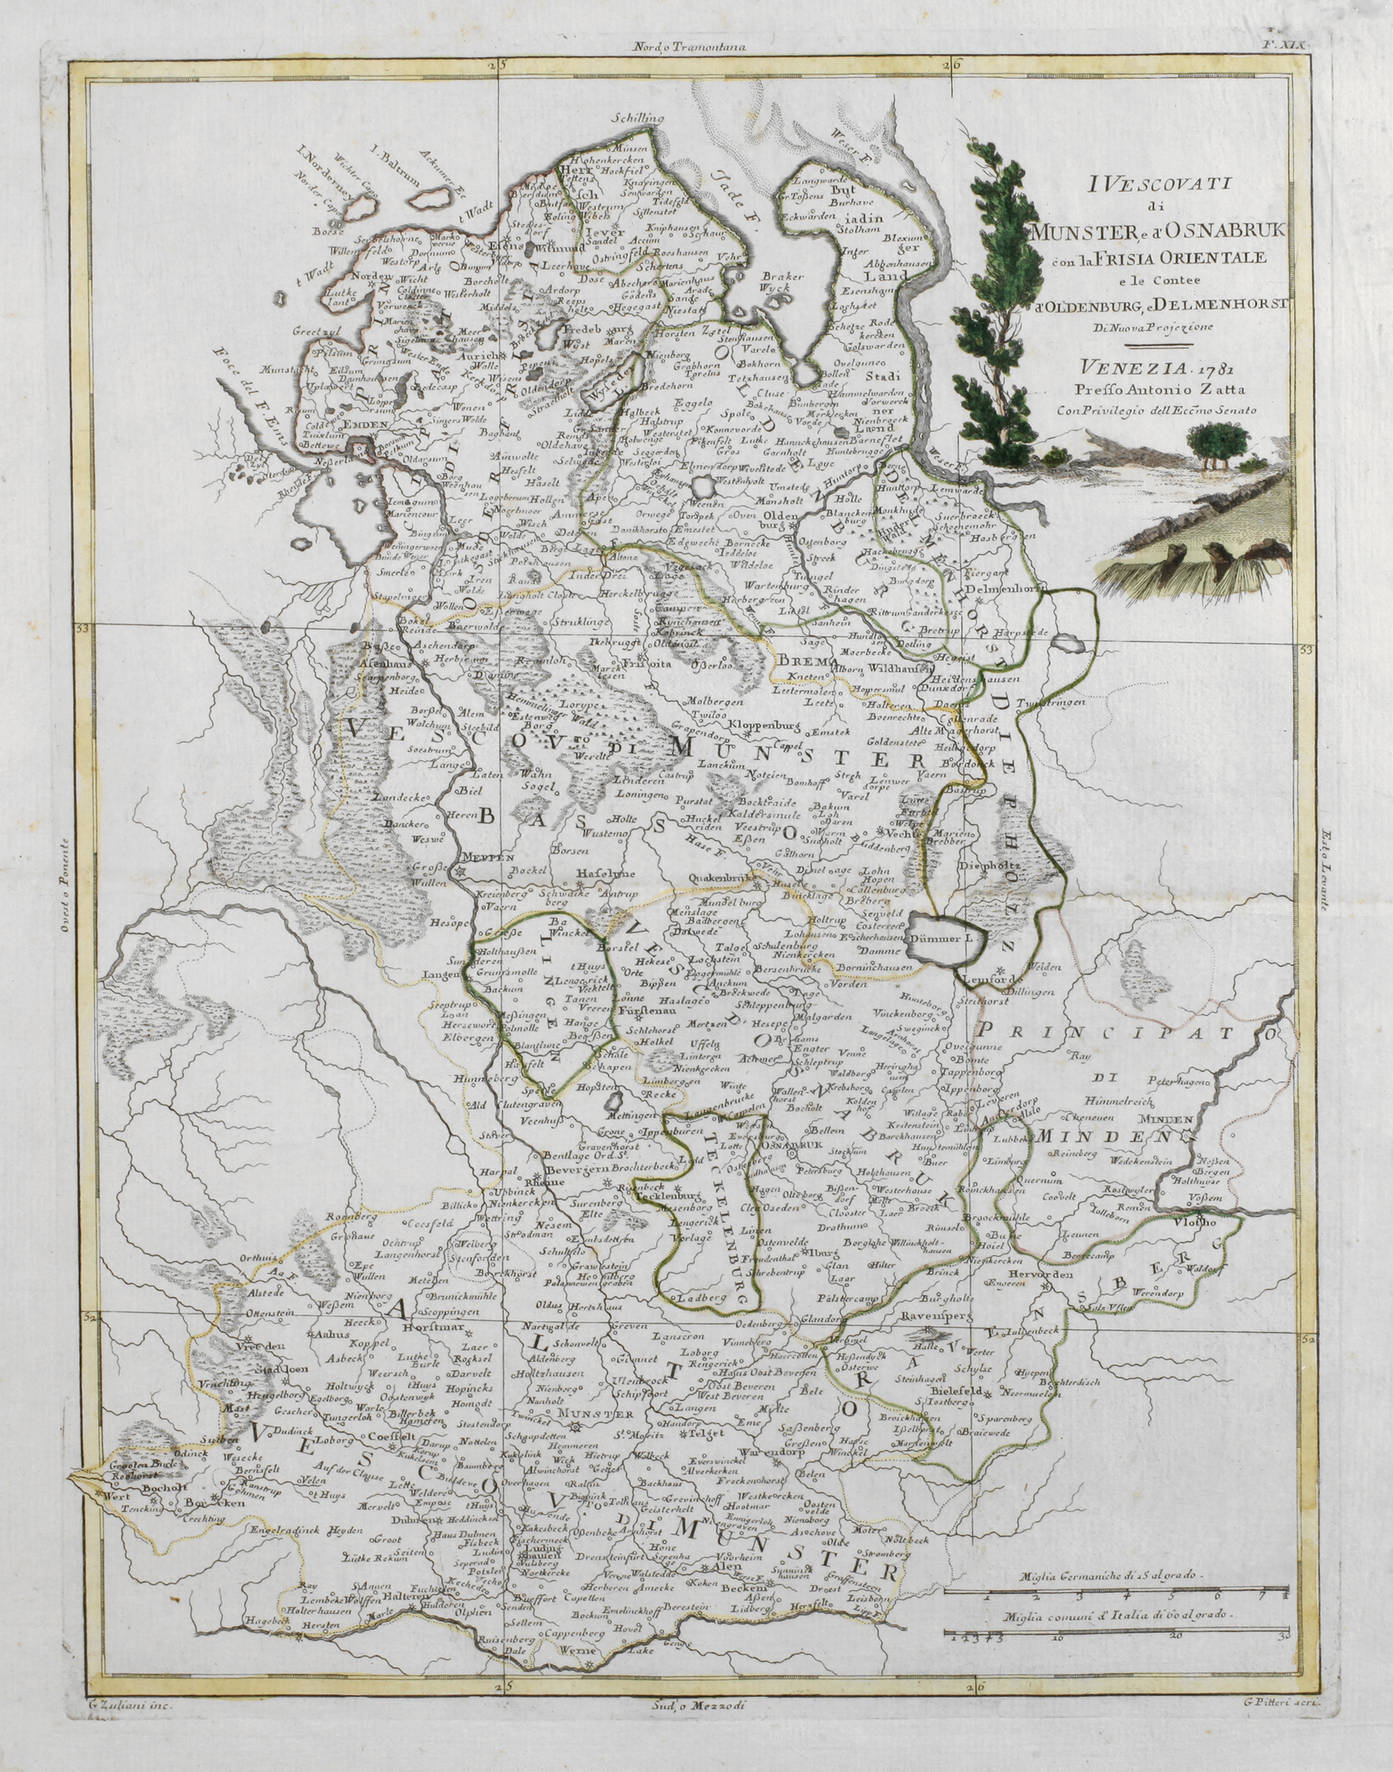 Antonio Zatta, Karte Nordwestdeutschland 1781